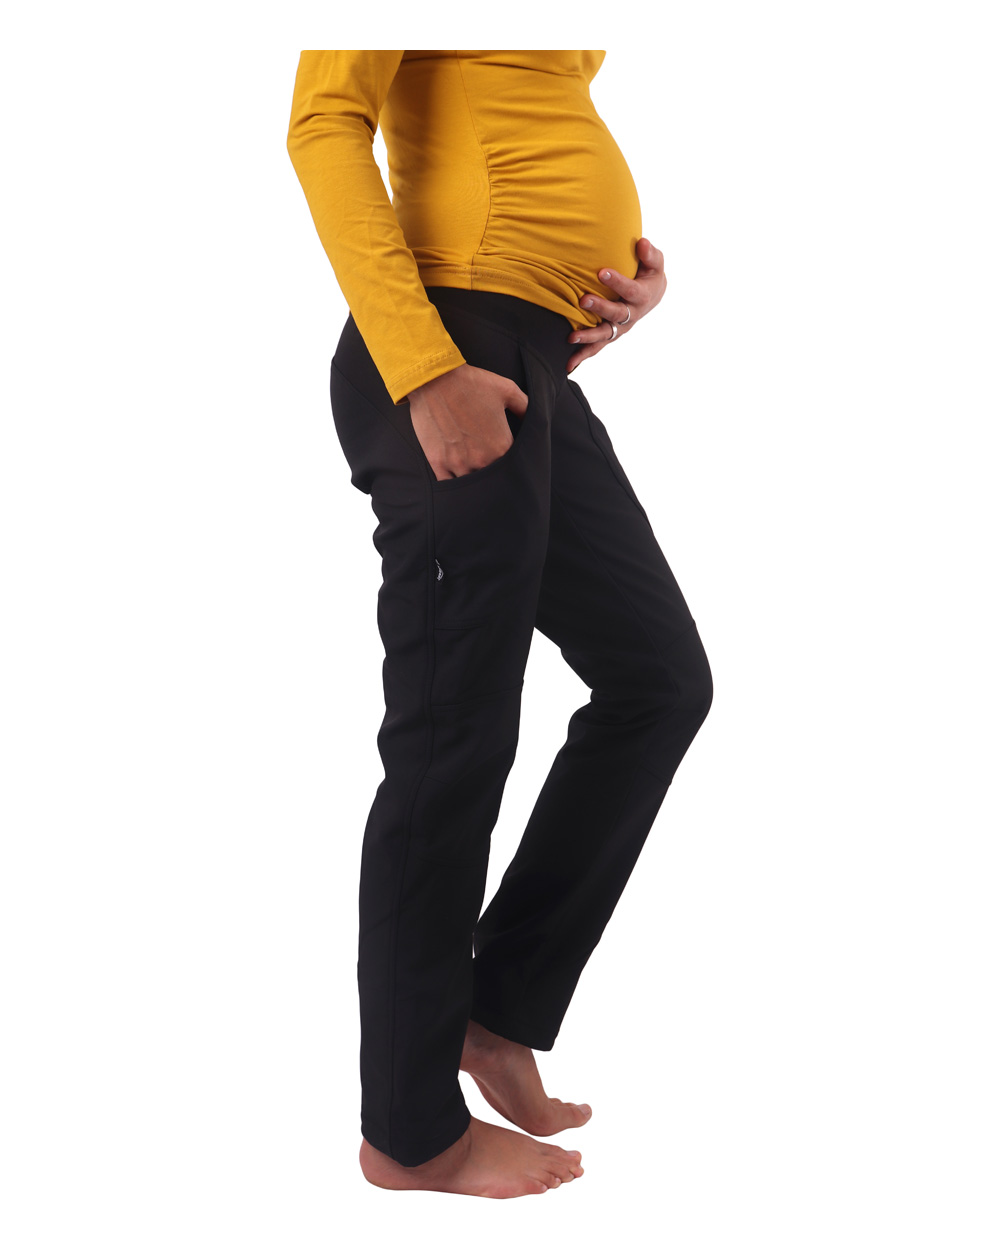 Zimní těhotenské softshellové kalhoty Sága, 46 zkrácené, černé 2. jakost č. 816